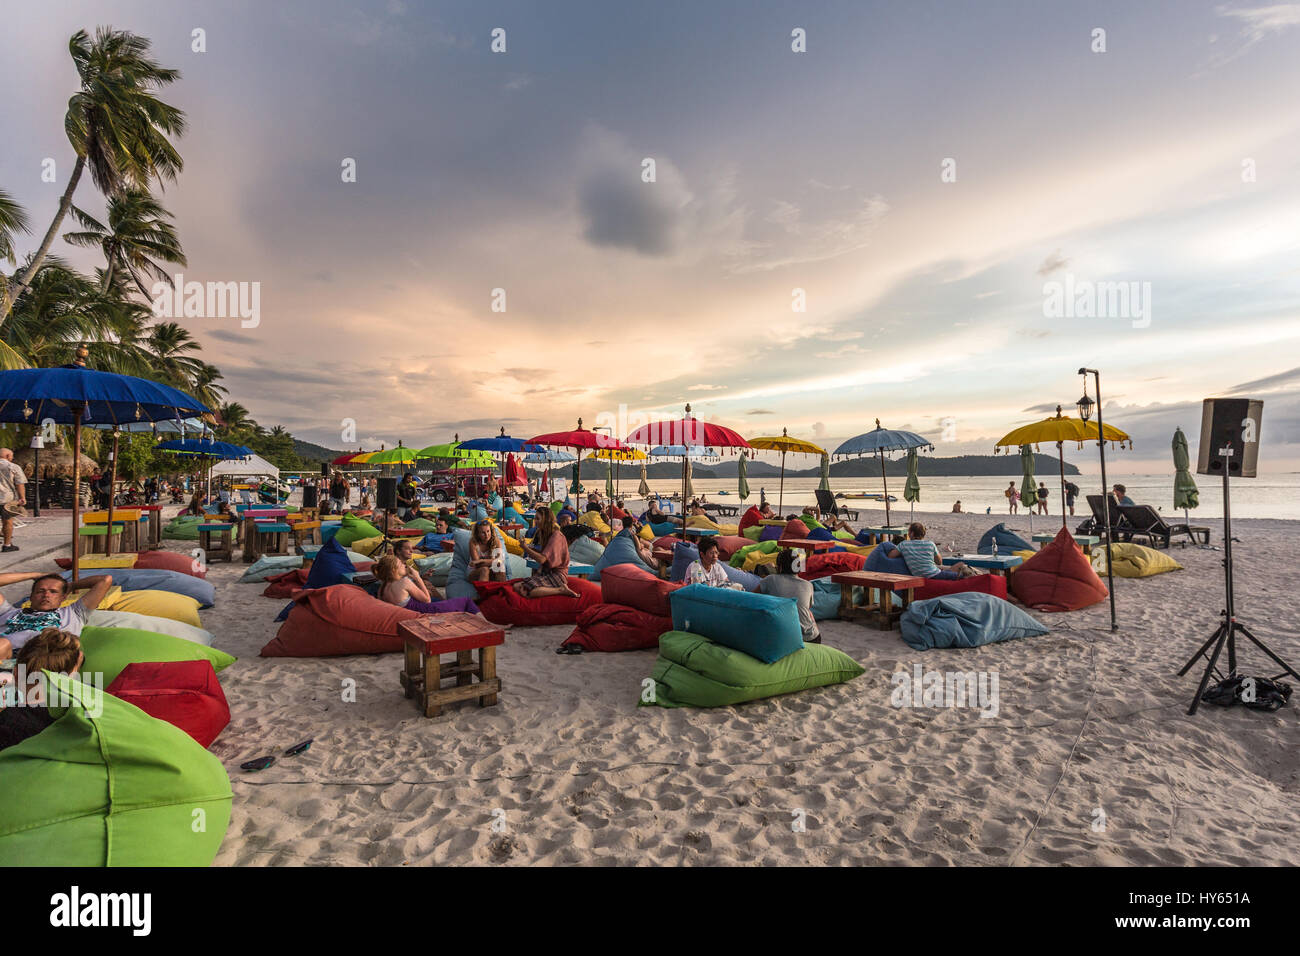 LANGKAWI, MALAISIE, le 19 janvier 2017 : les touristes prendre un verre dans un bar sur la plage sur la plage de Cenang Langkawi, une île de la mer d'Andaman en Malaisie Banque D'Images